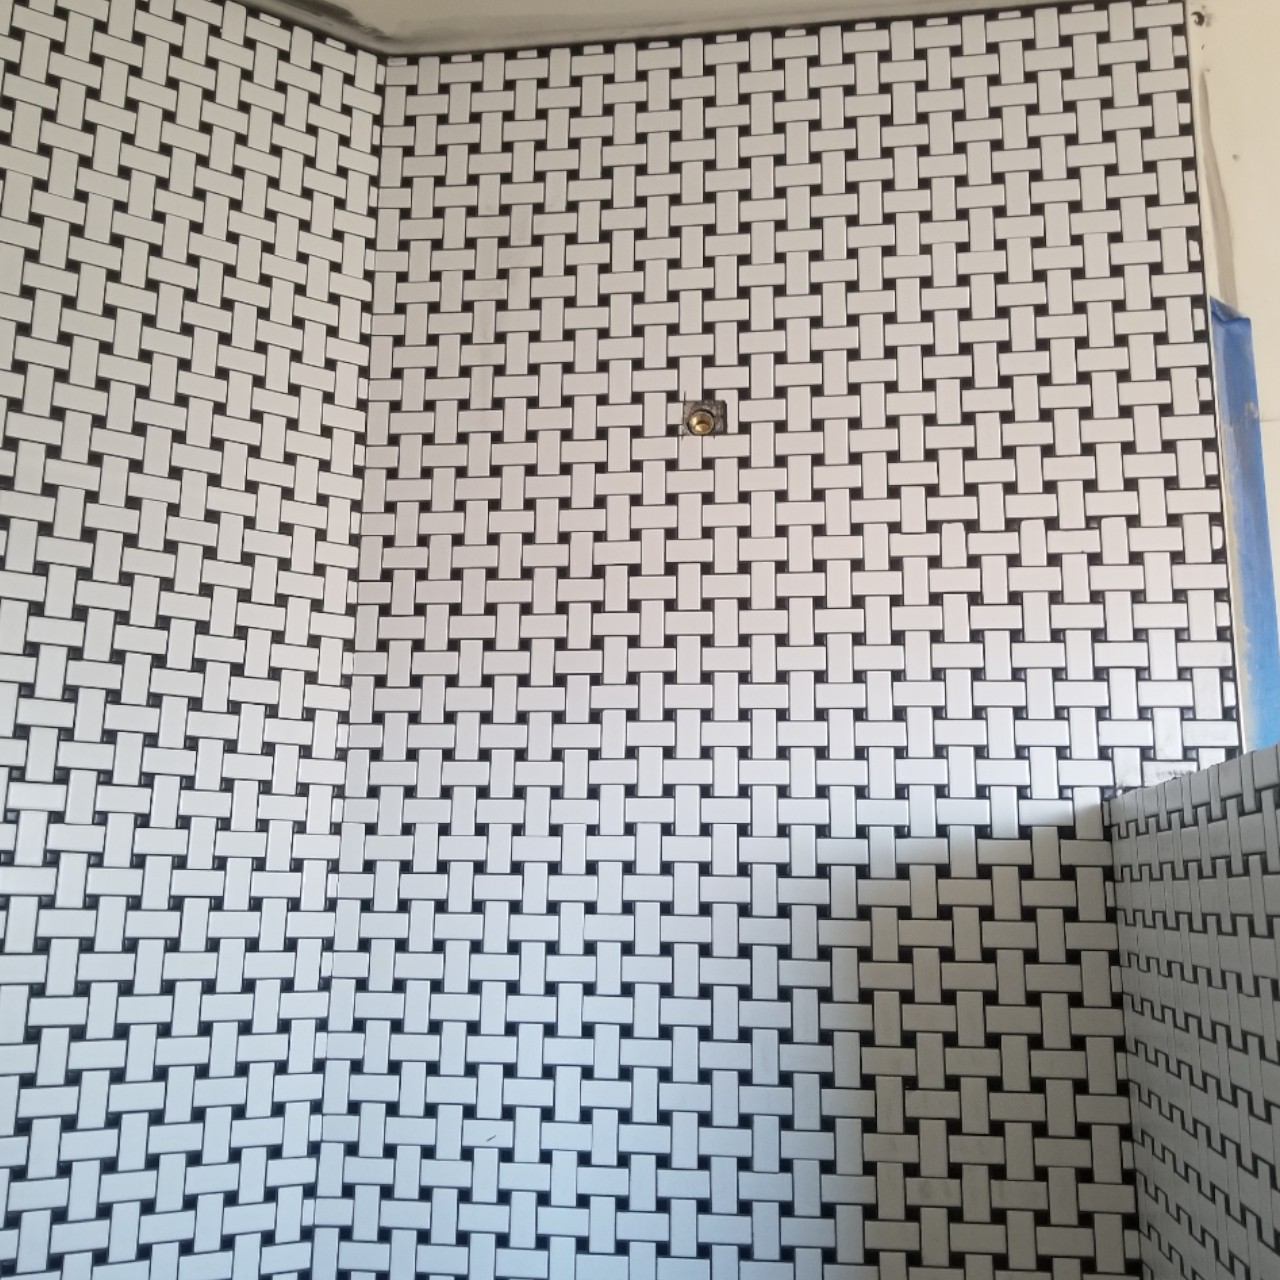 tiling-custom-bathtub-shower-tiles--tiling-05